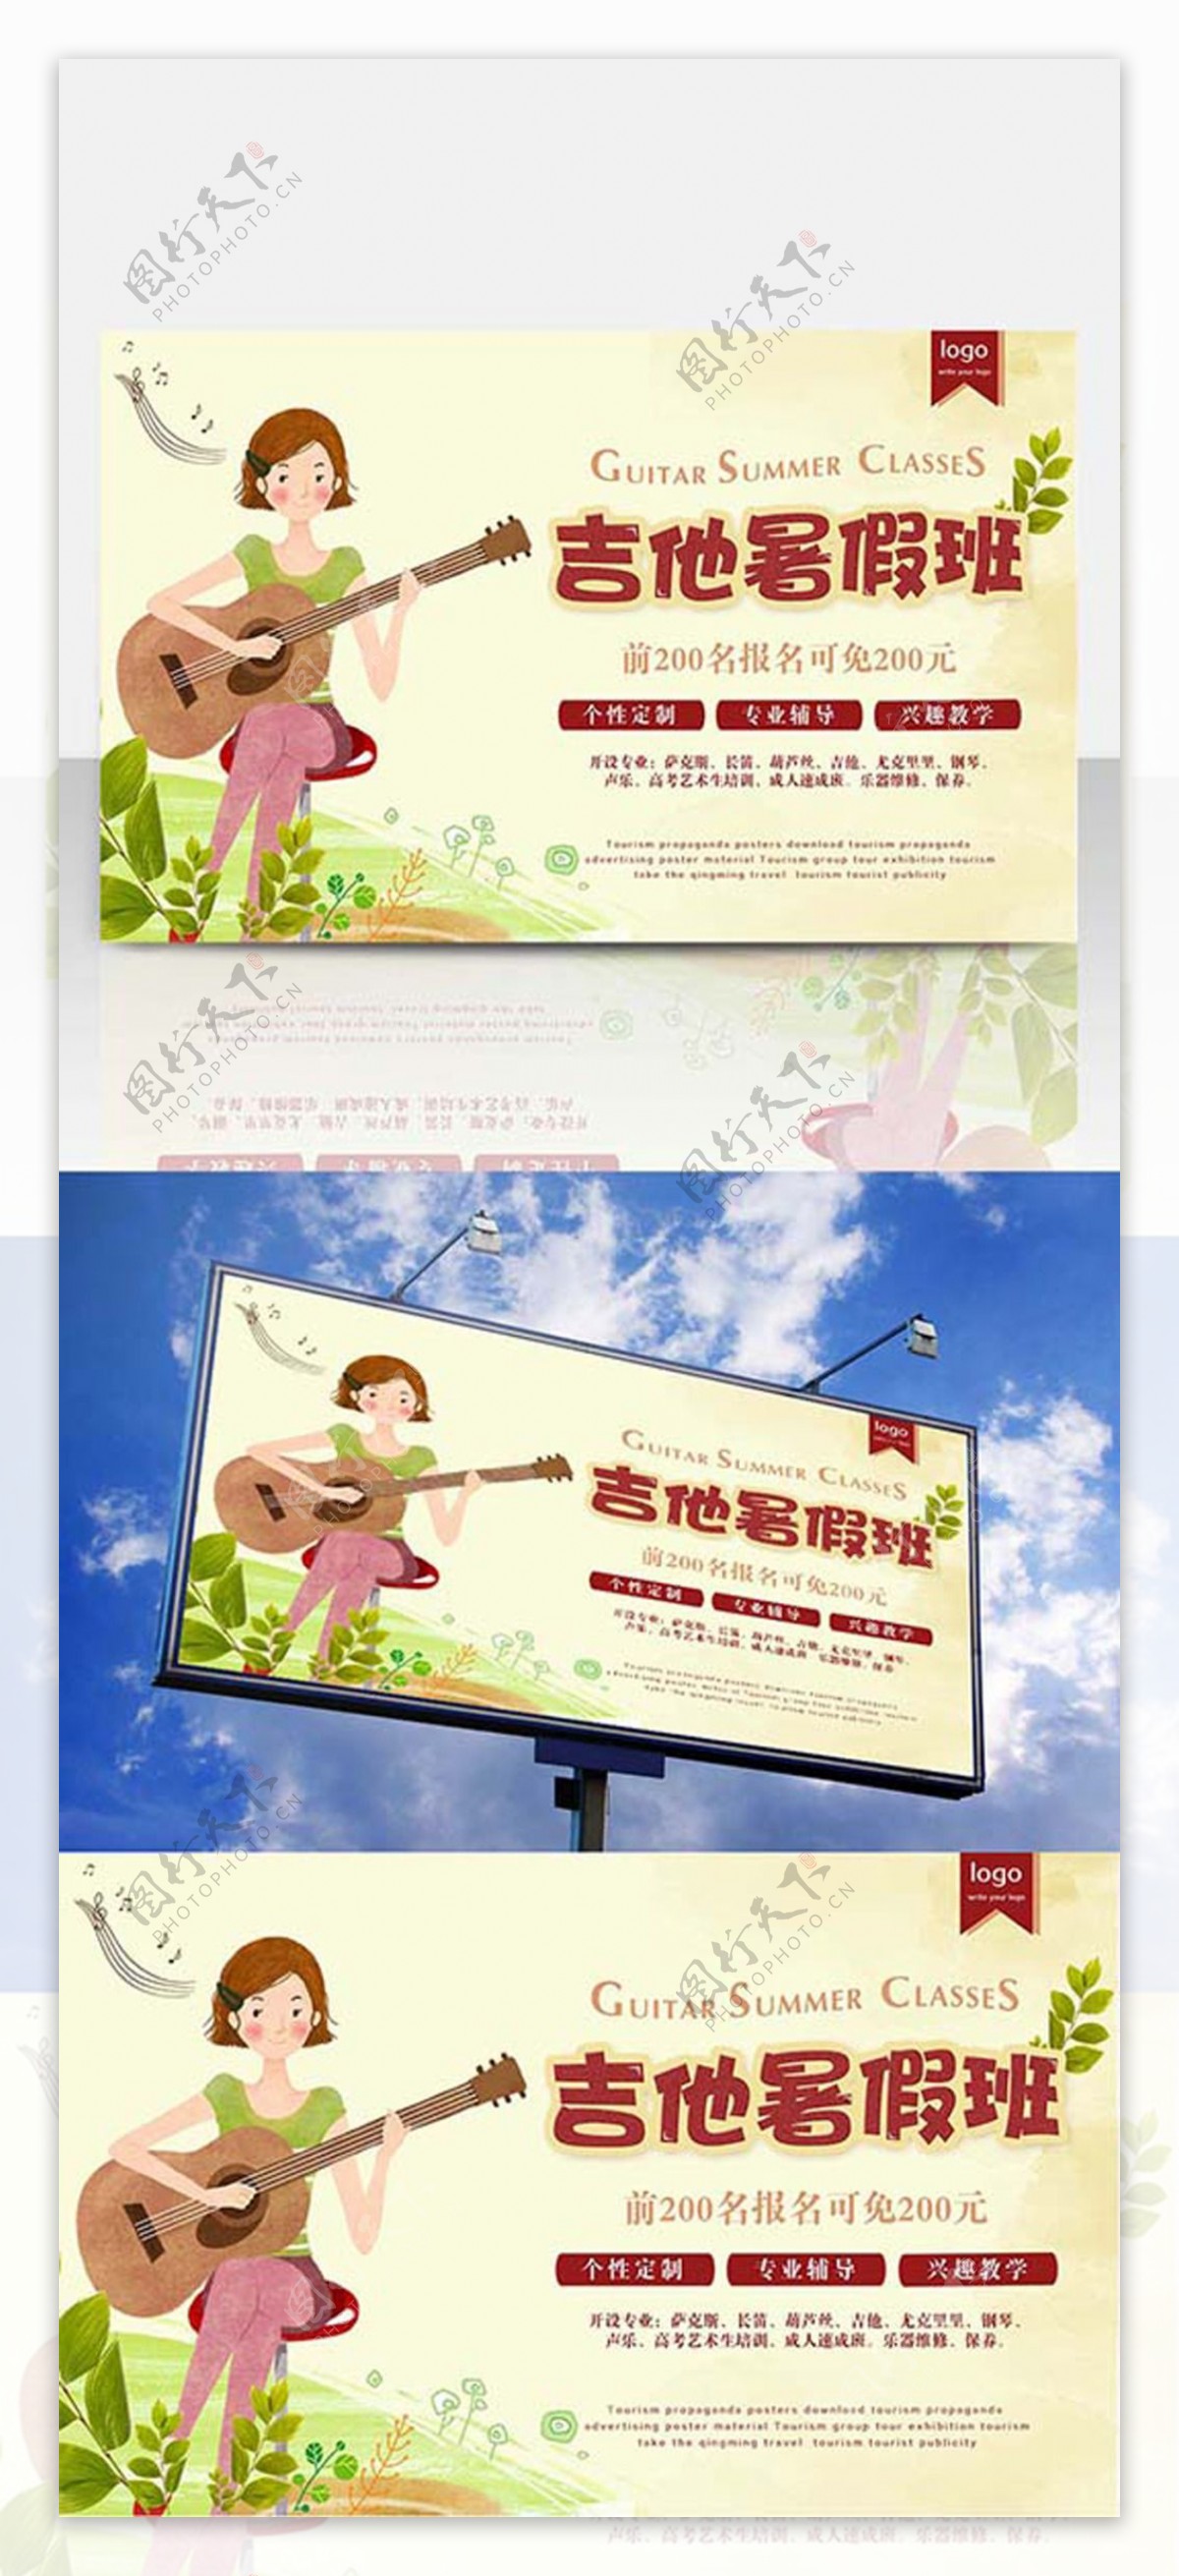 吉他暑假班艺术培训班兴趣班广告海报